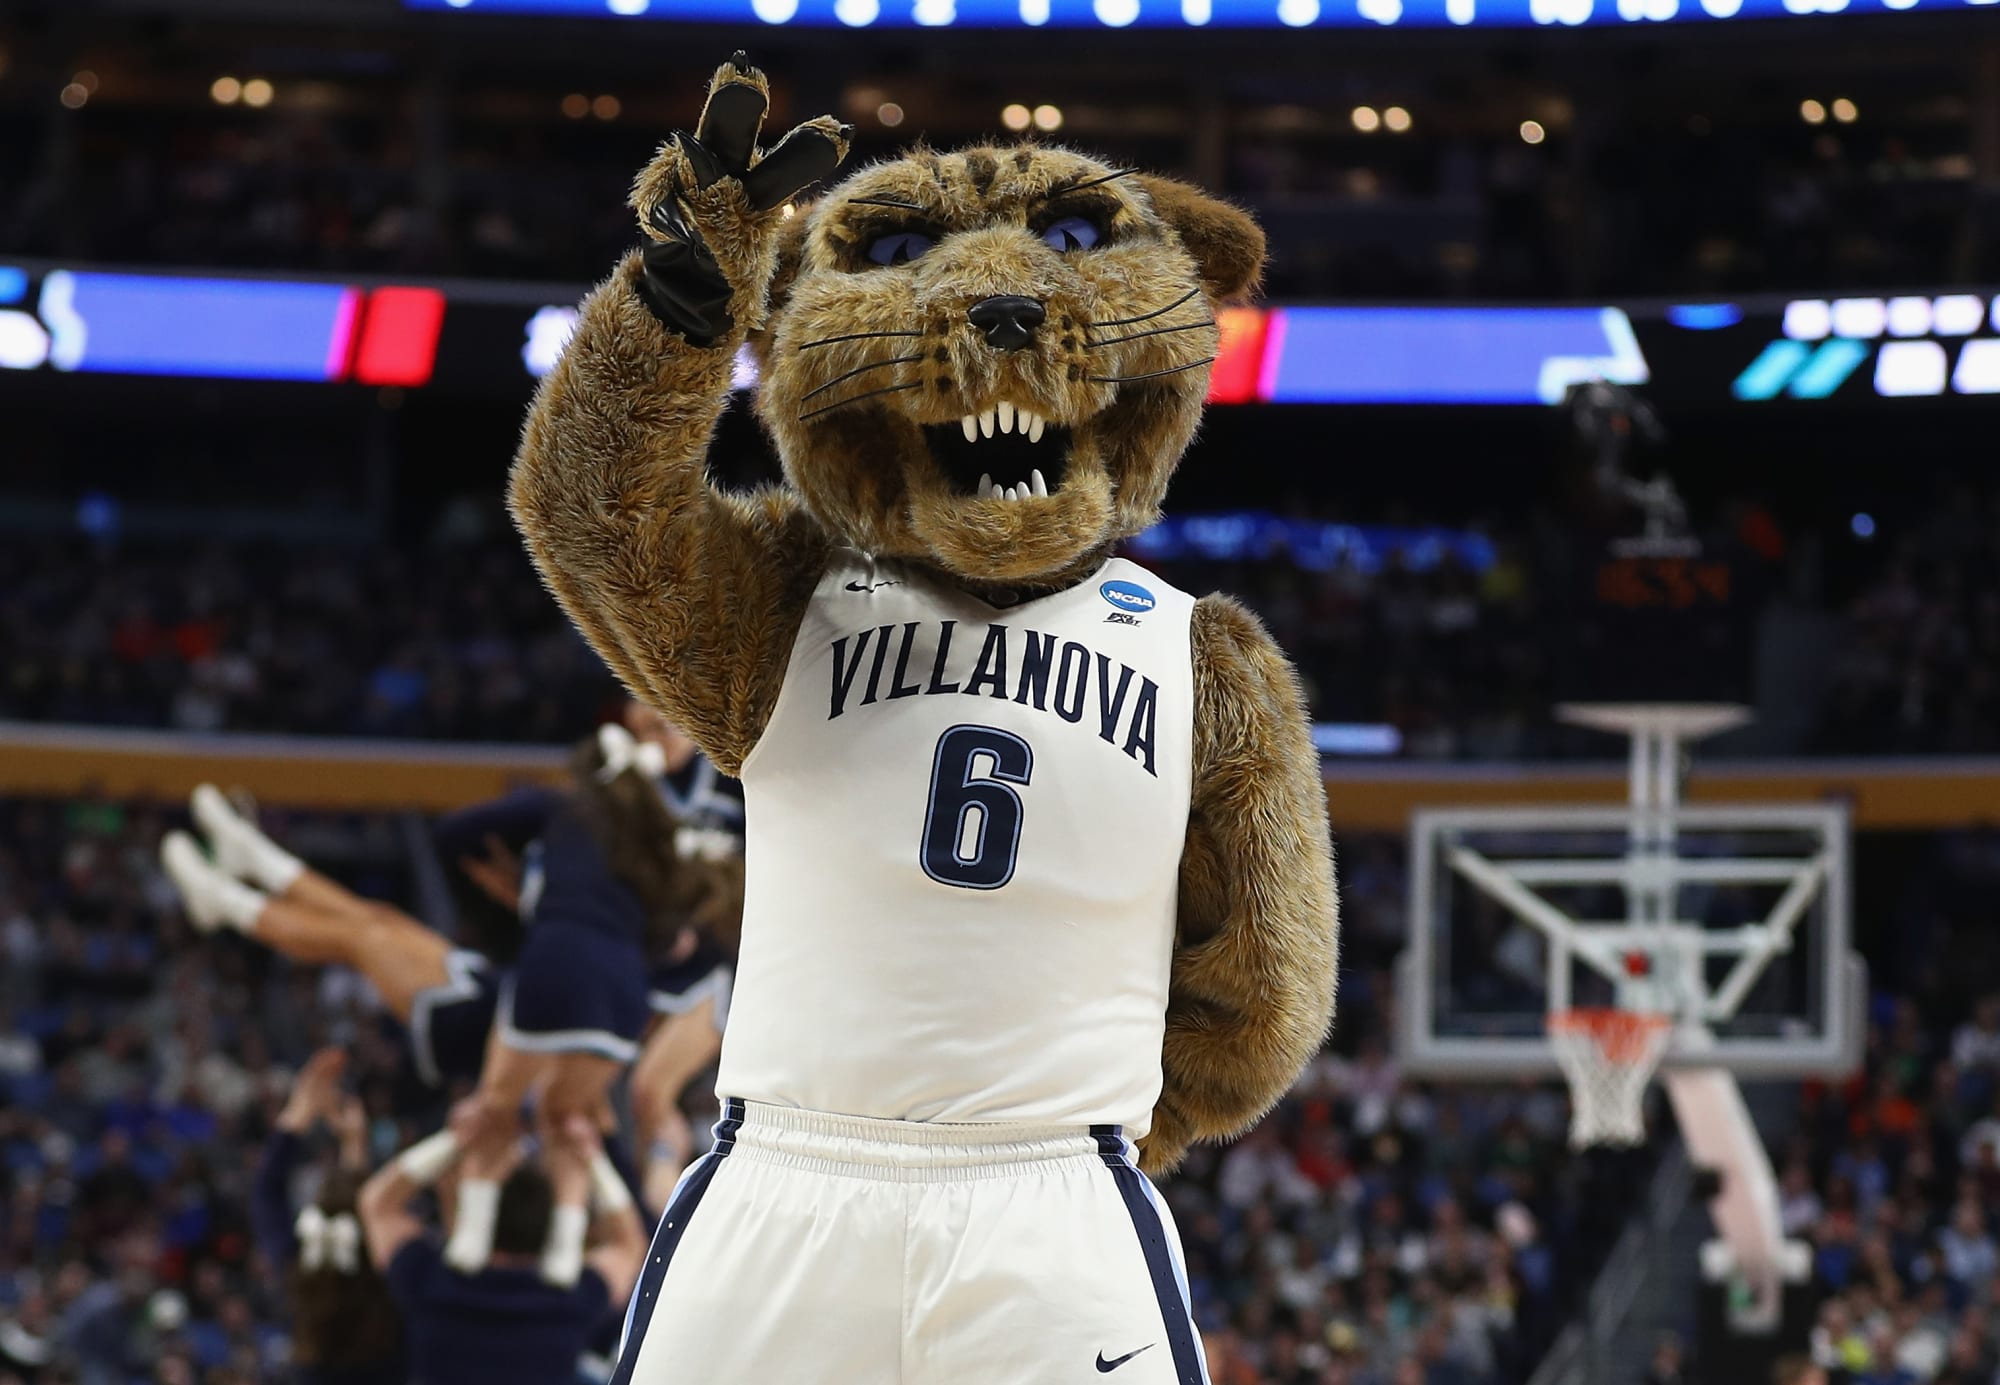 Villanova Basketball 201718 season preview for the Wildcats